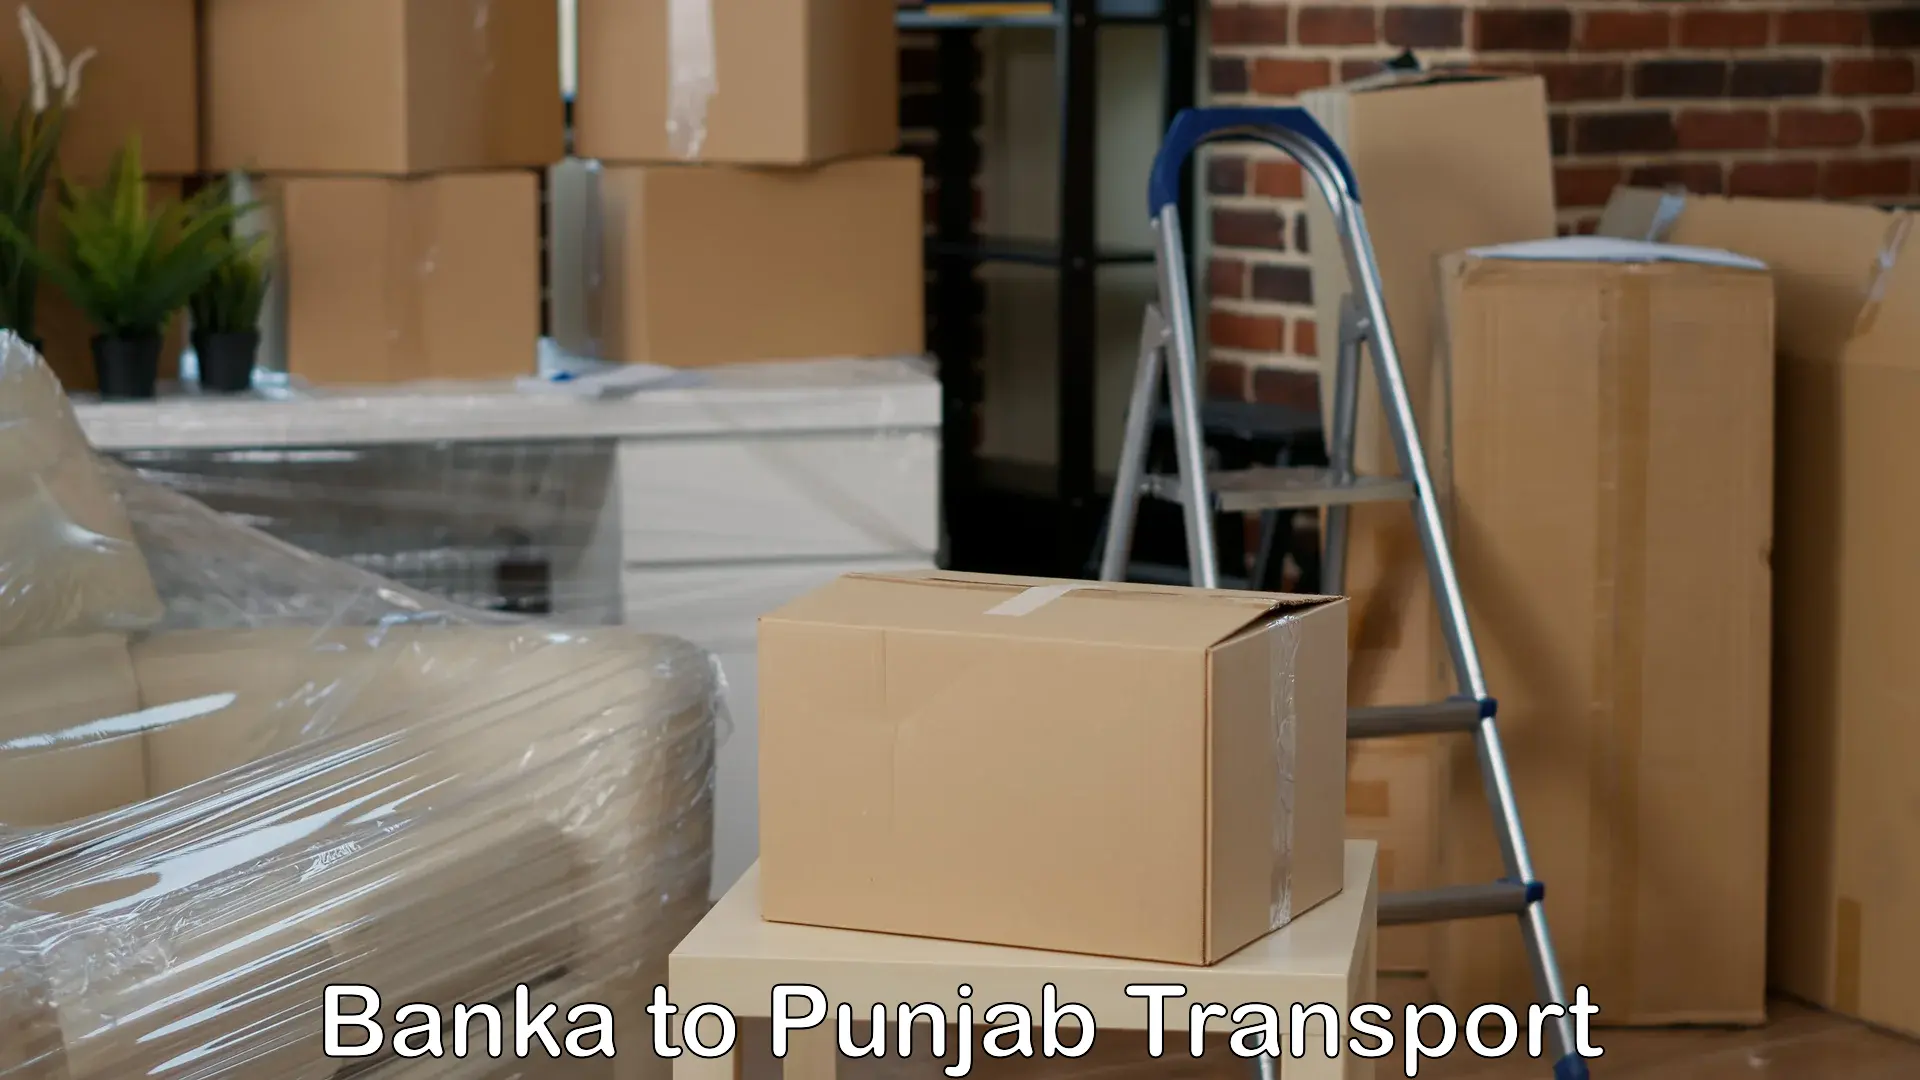 Furniture transport service Banka to Nangal